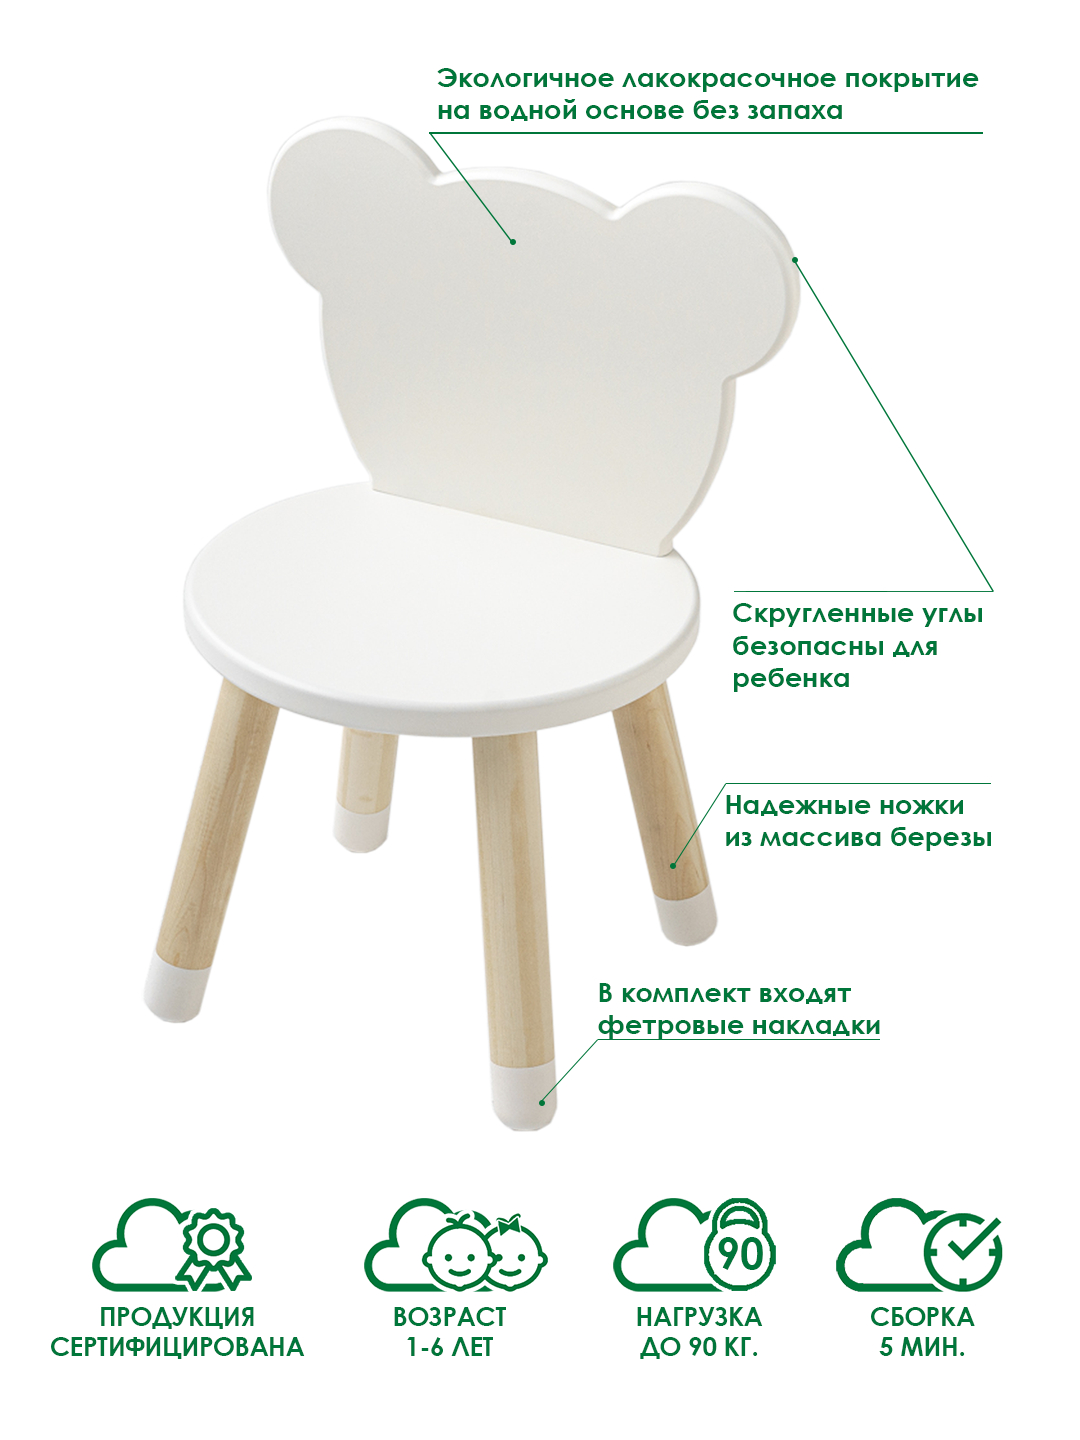 Таблица столов и стульев для детей дошкольного возраста